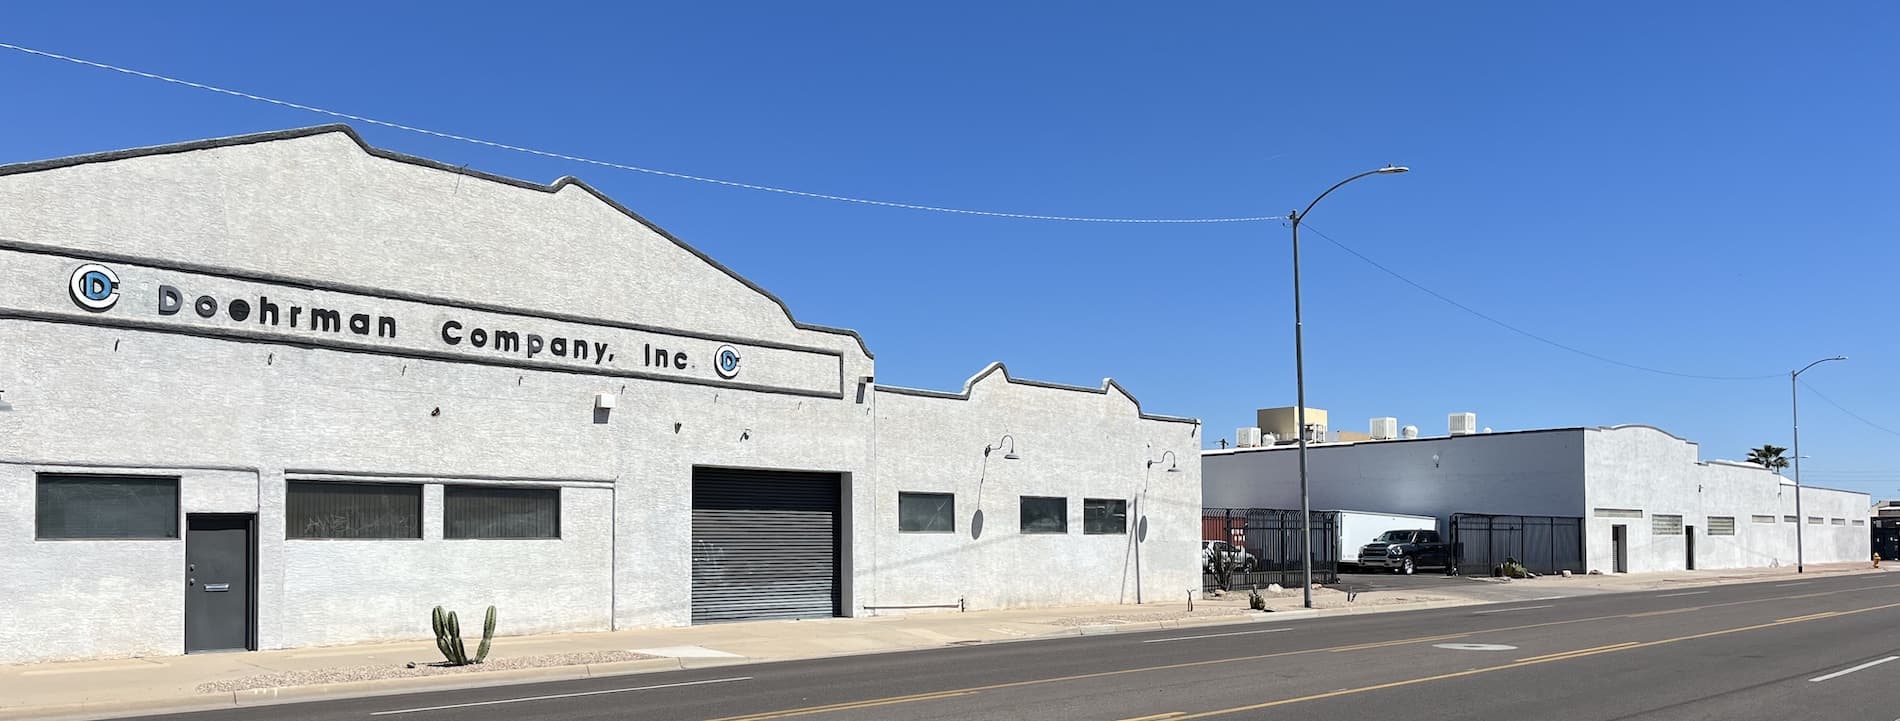 Doehrman Company - Main Building Location in Phoenix Arizona